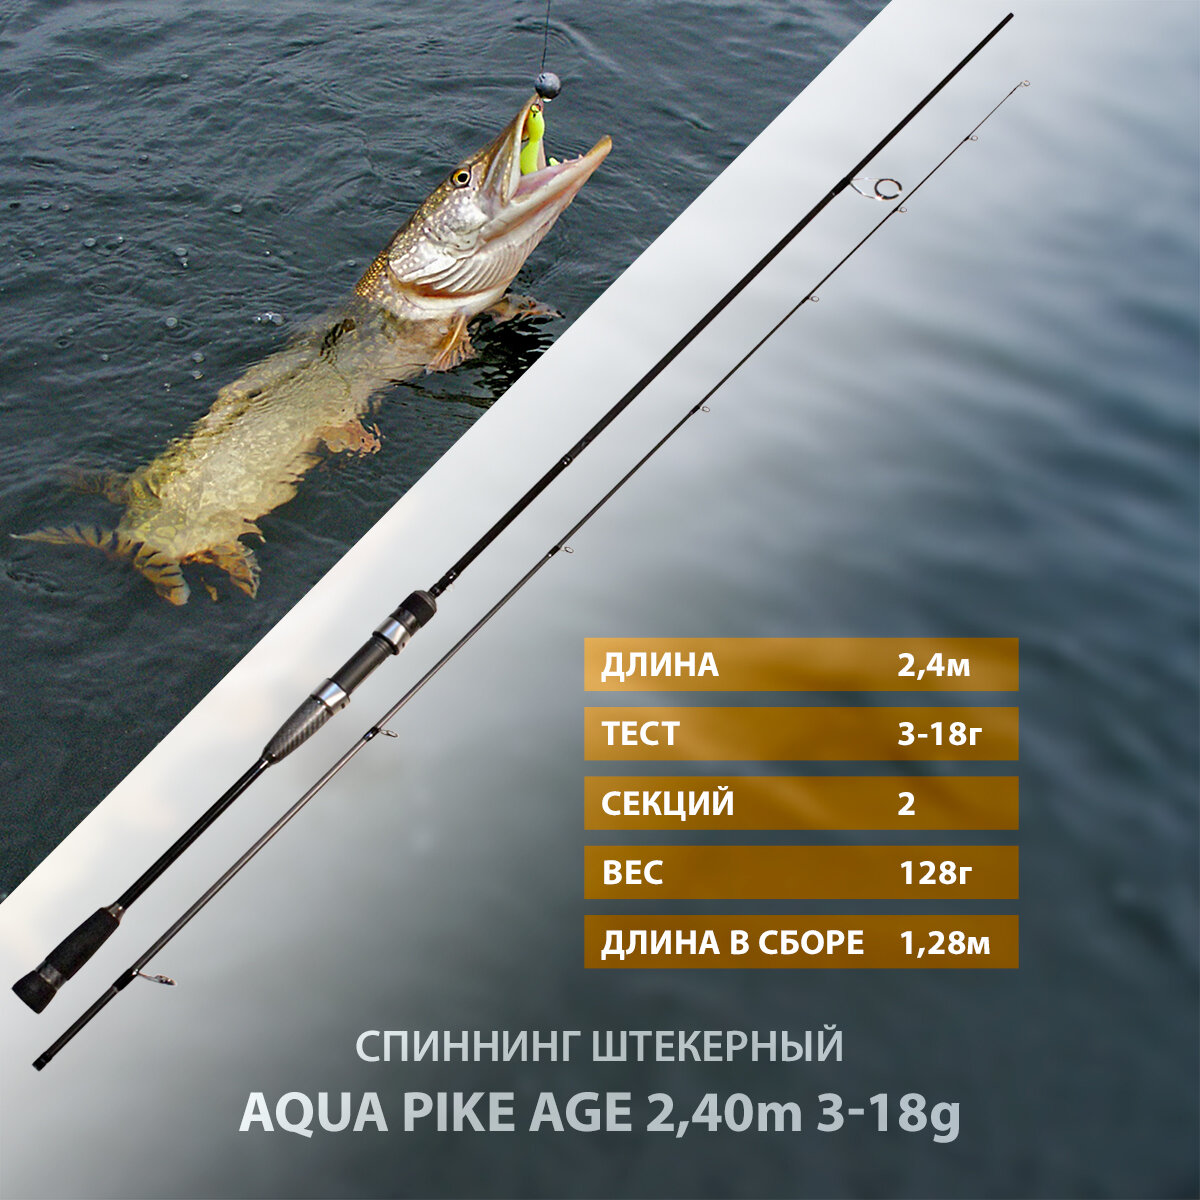 Спиннинг штекерный AQUA PIKE AGE 2,40 m, 3-18g